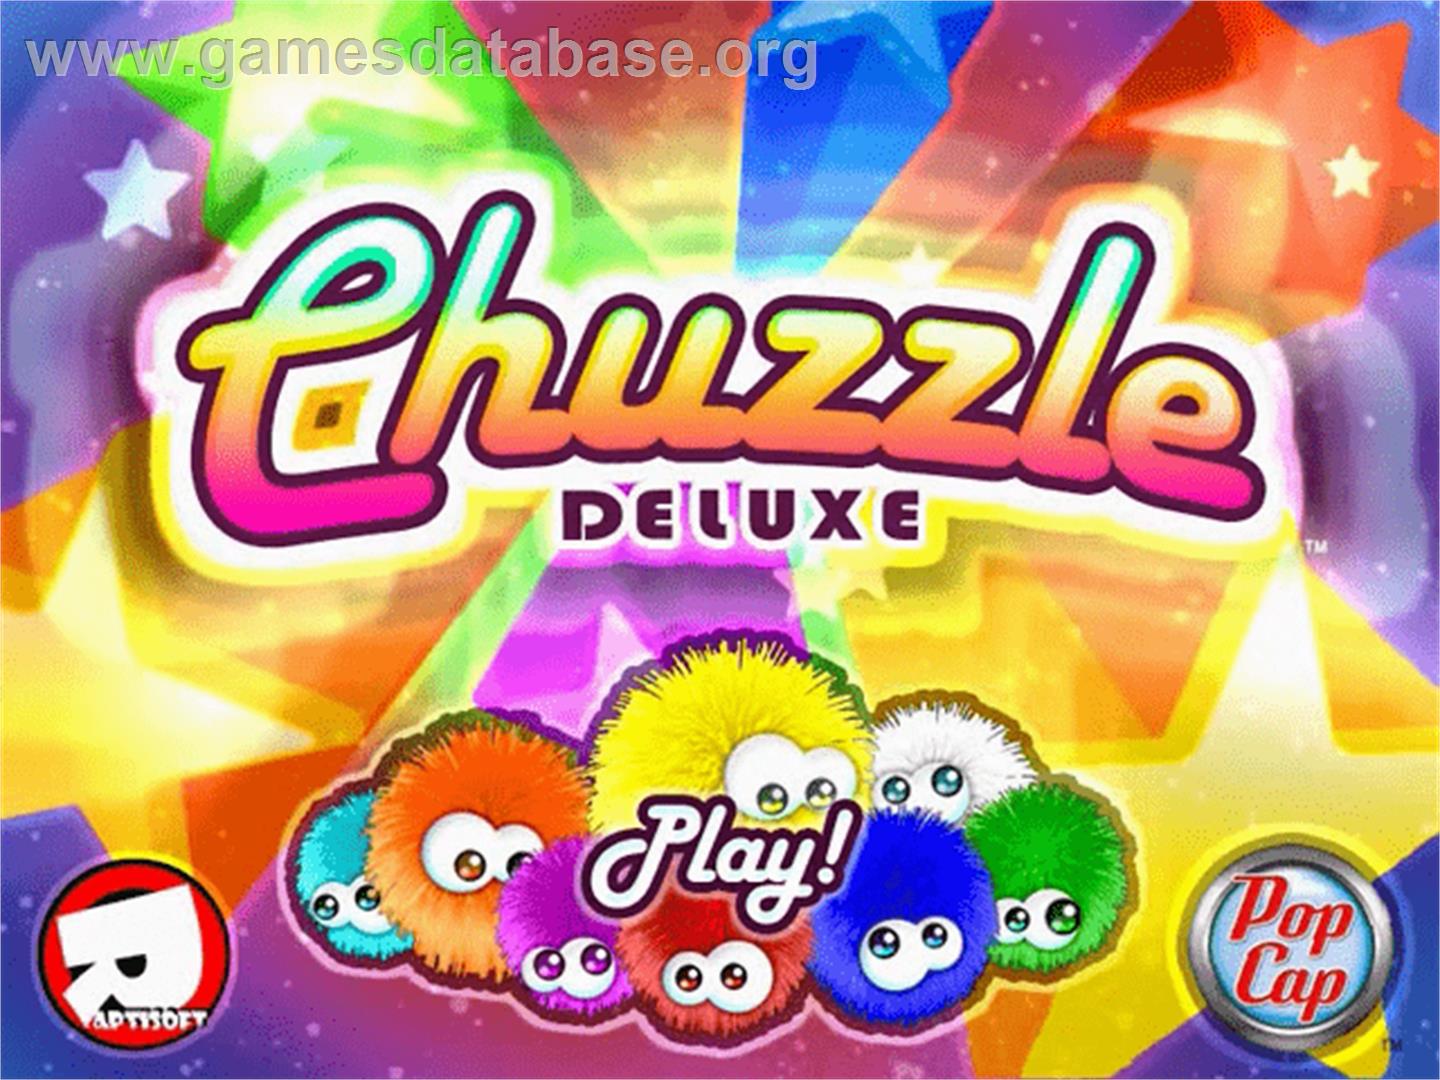 Chuzzle Deluxe - PopCap - Artwork - Title Screen